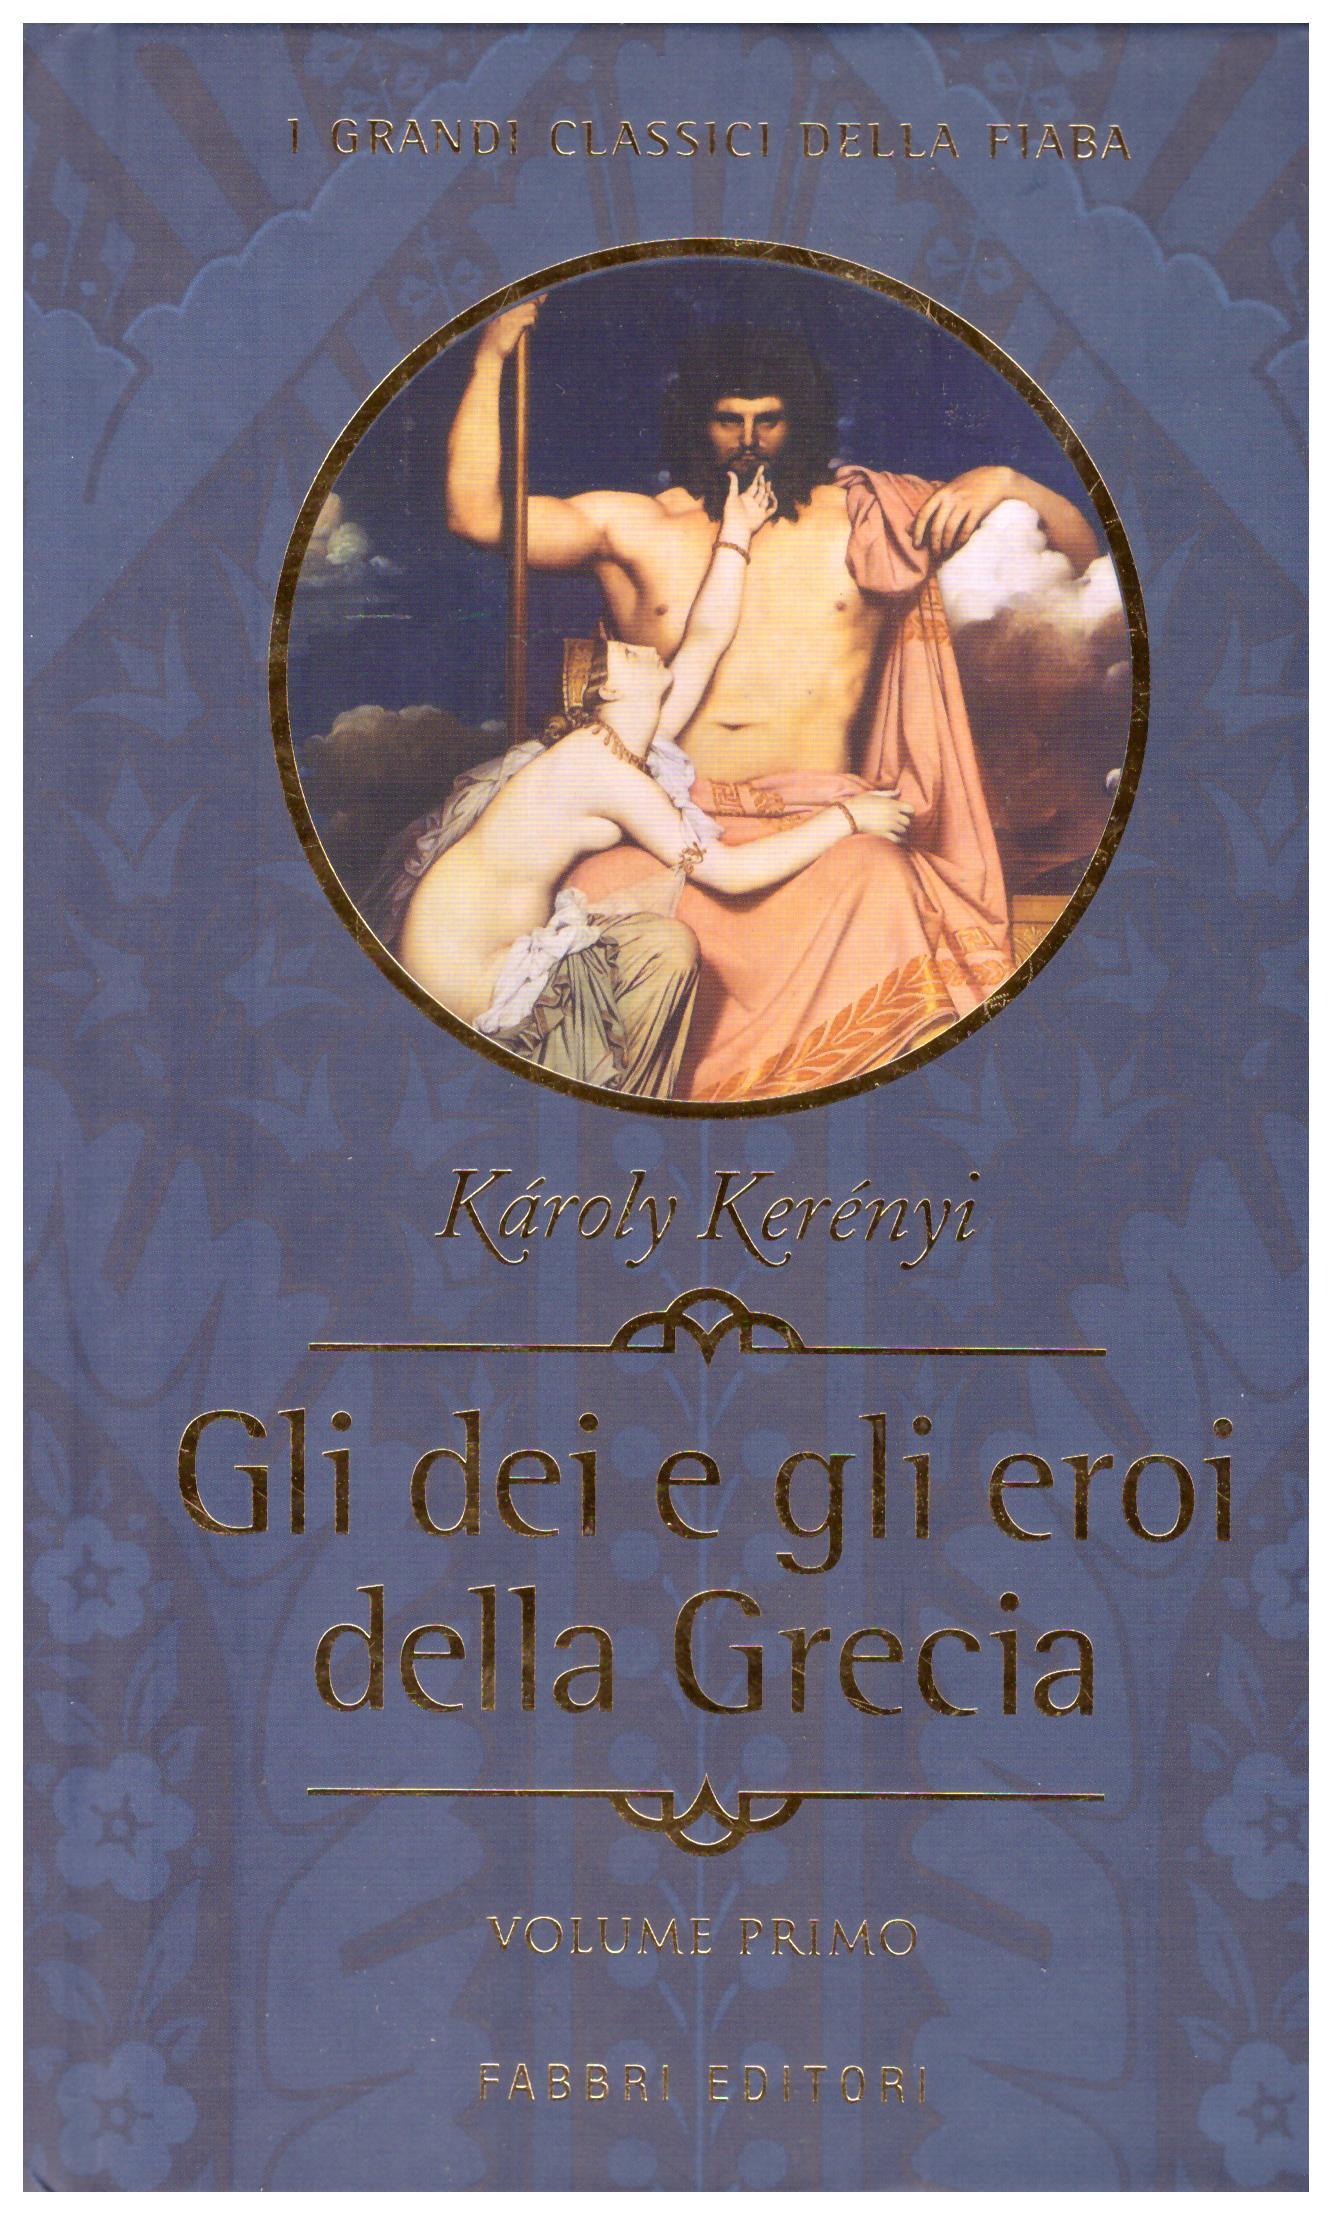 Titolo: I Grandi Classici della Fiaba, Gli dei e gli eroi della Grecia    Autore: Karoly Kerènyi    Editore: Fabbri Editori